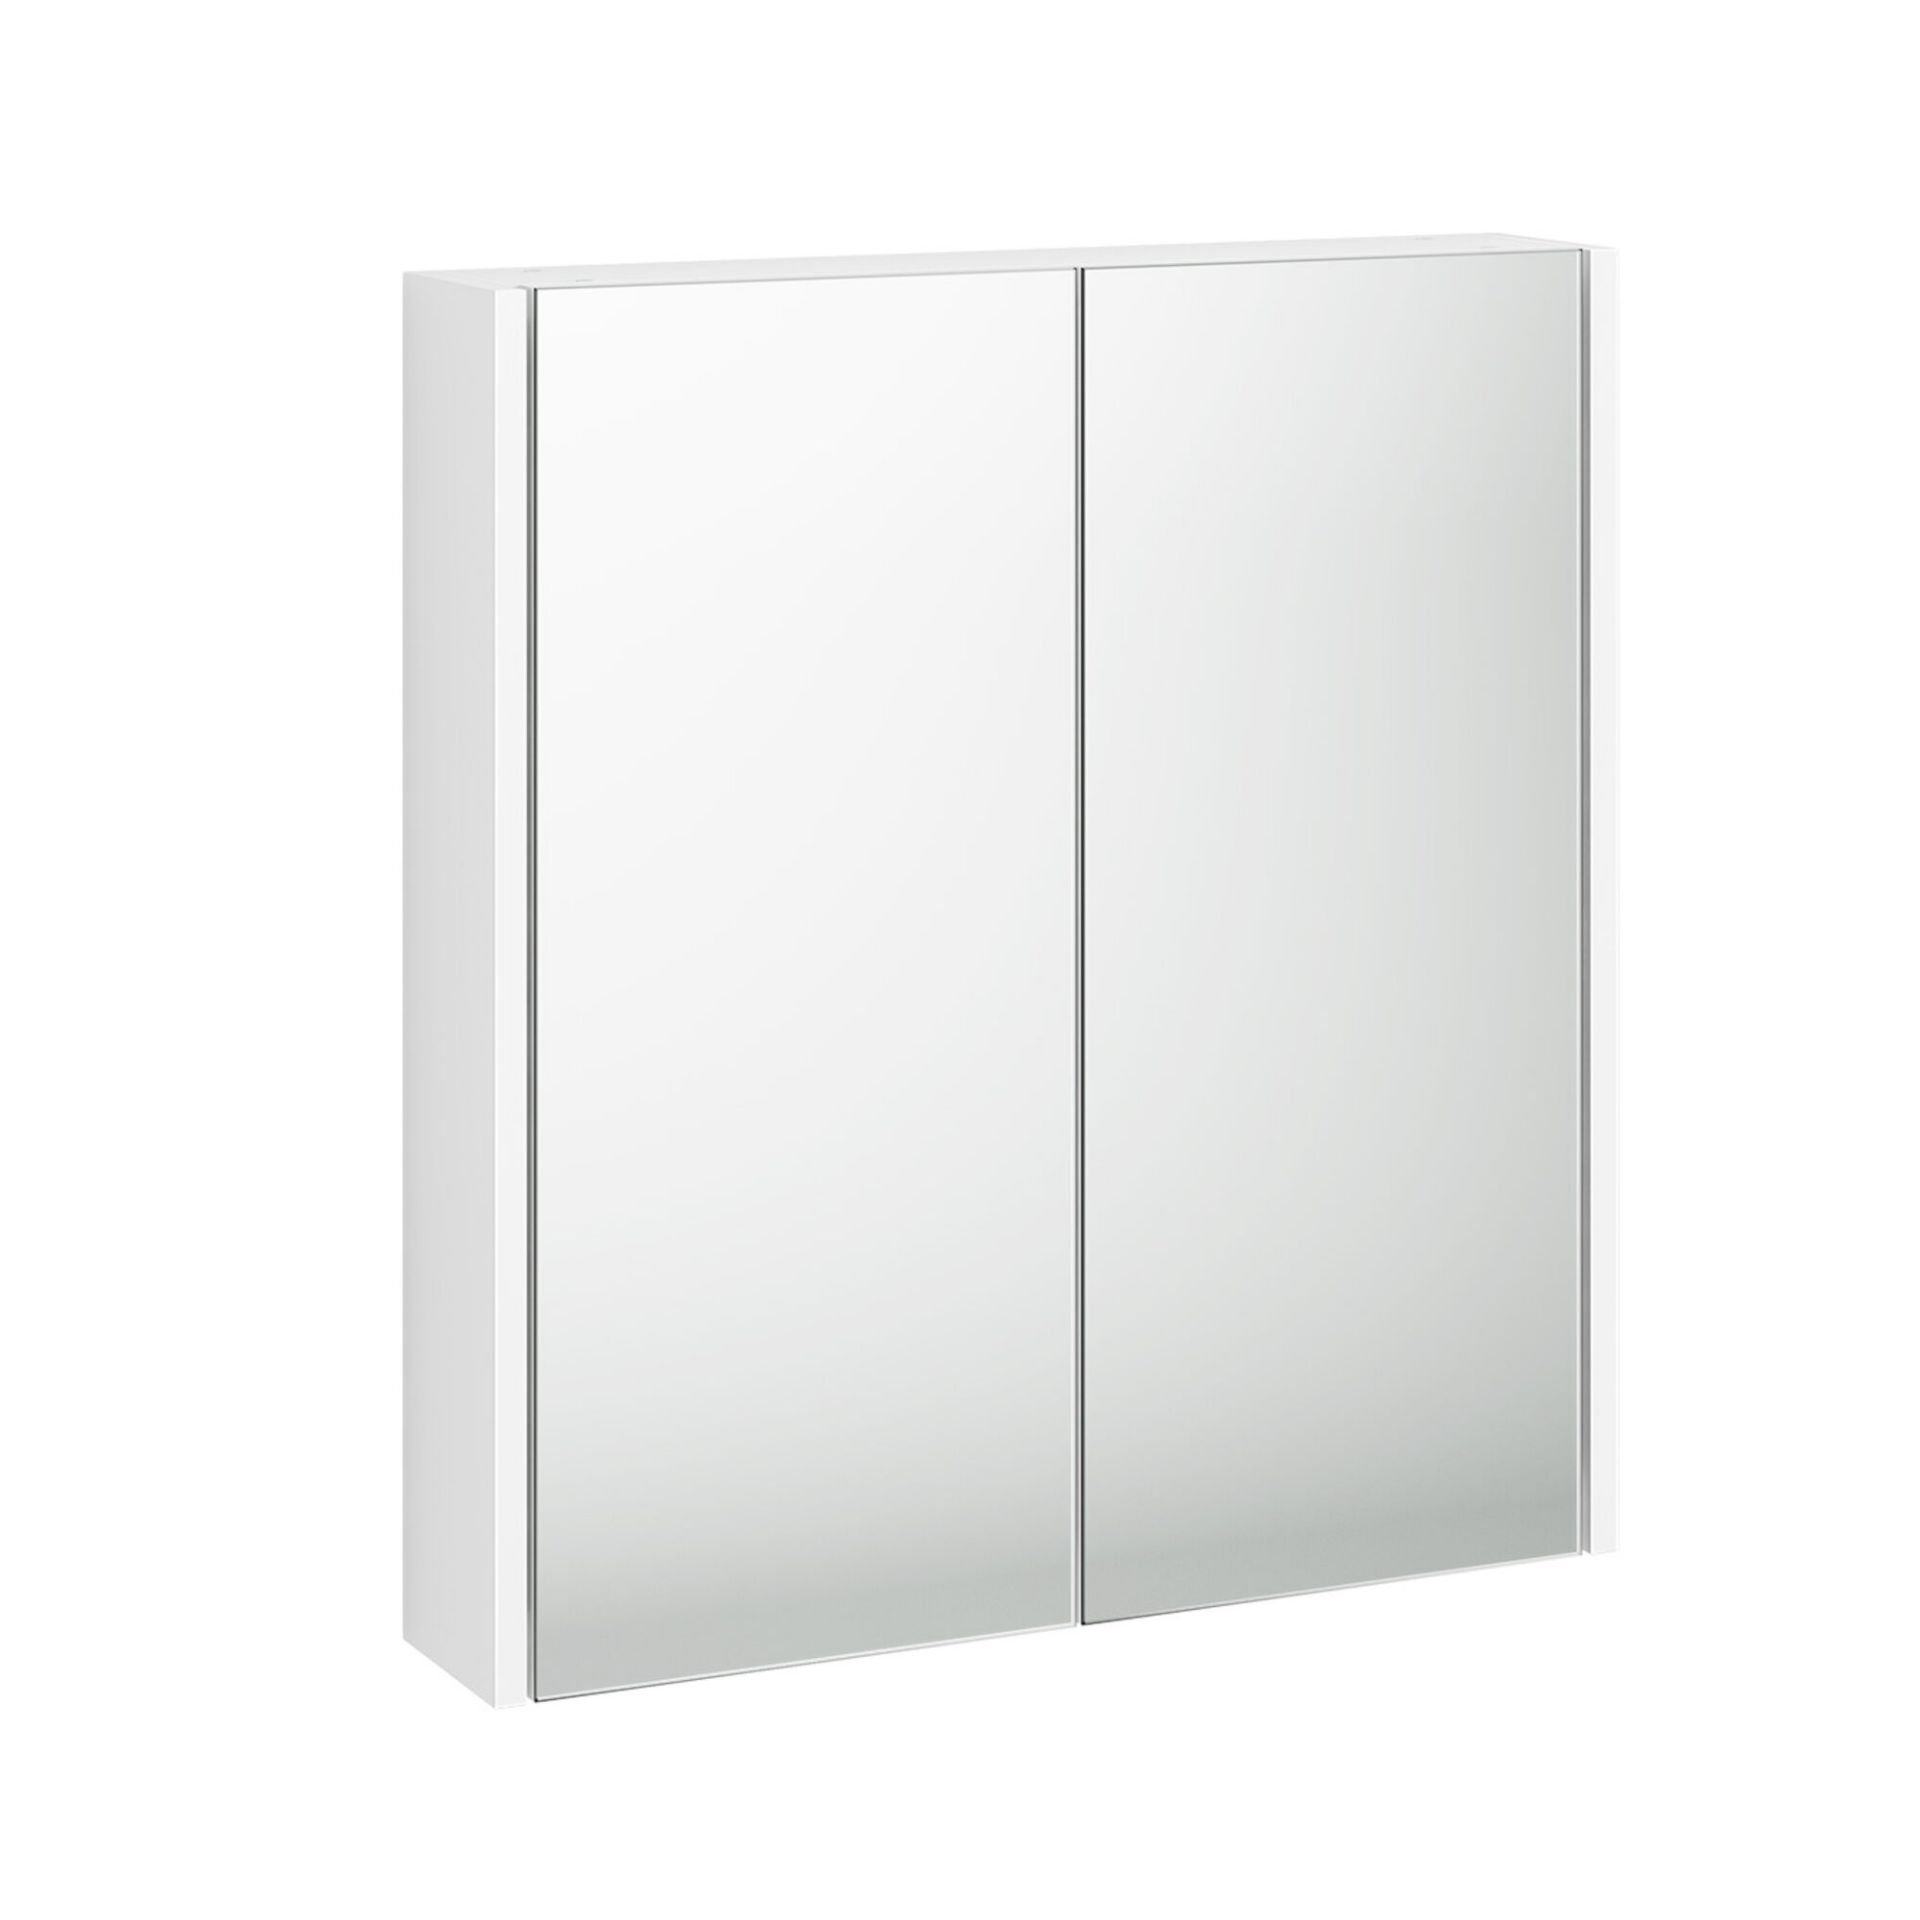 (MW205) 600mm Gloss White Double Door Mirror Cabinet. Double door opening concealing internal